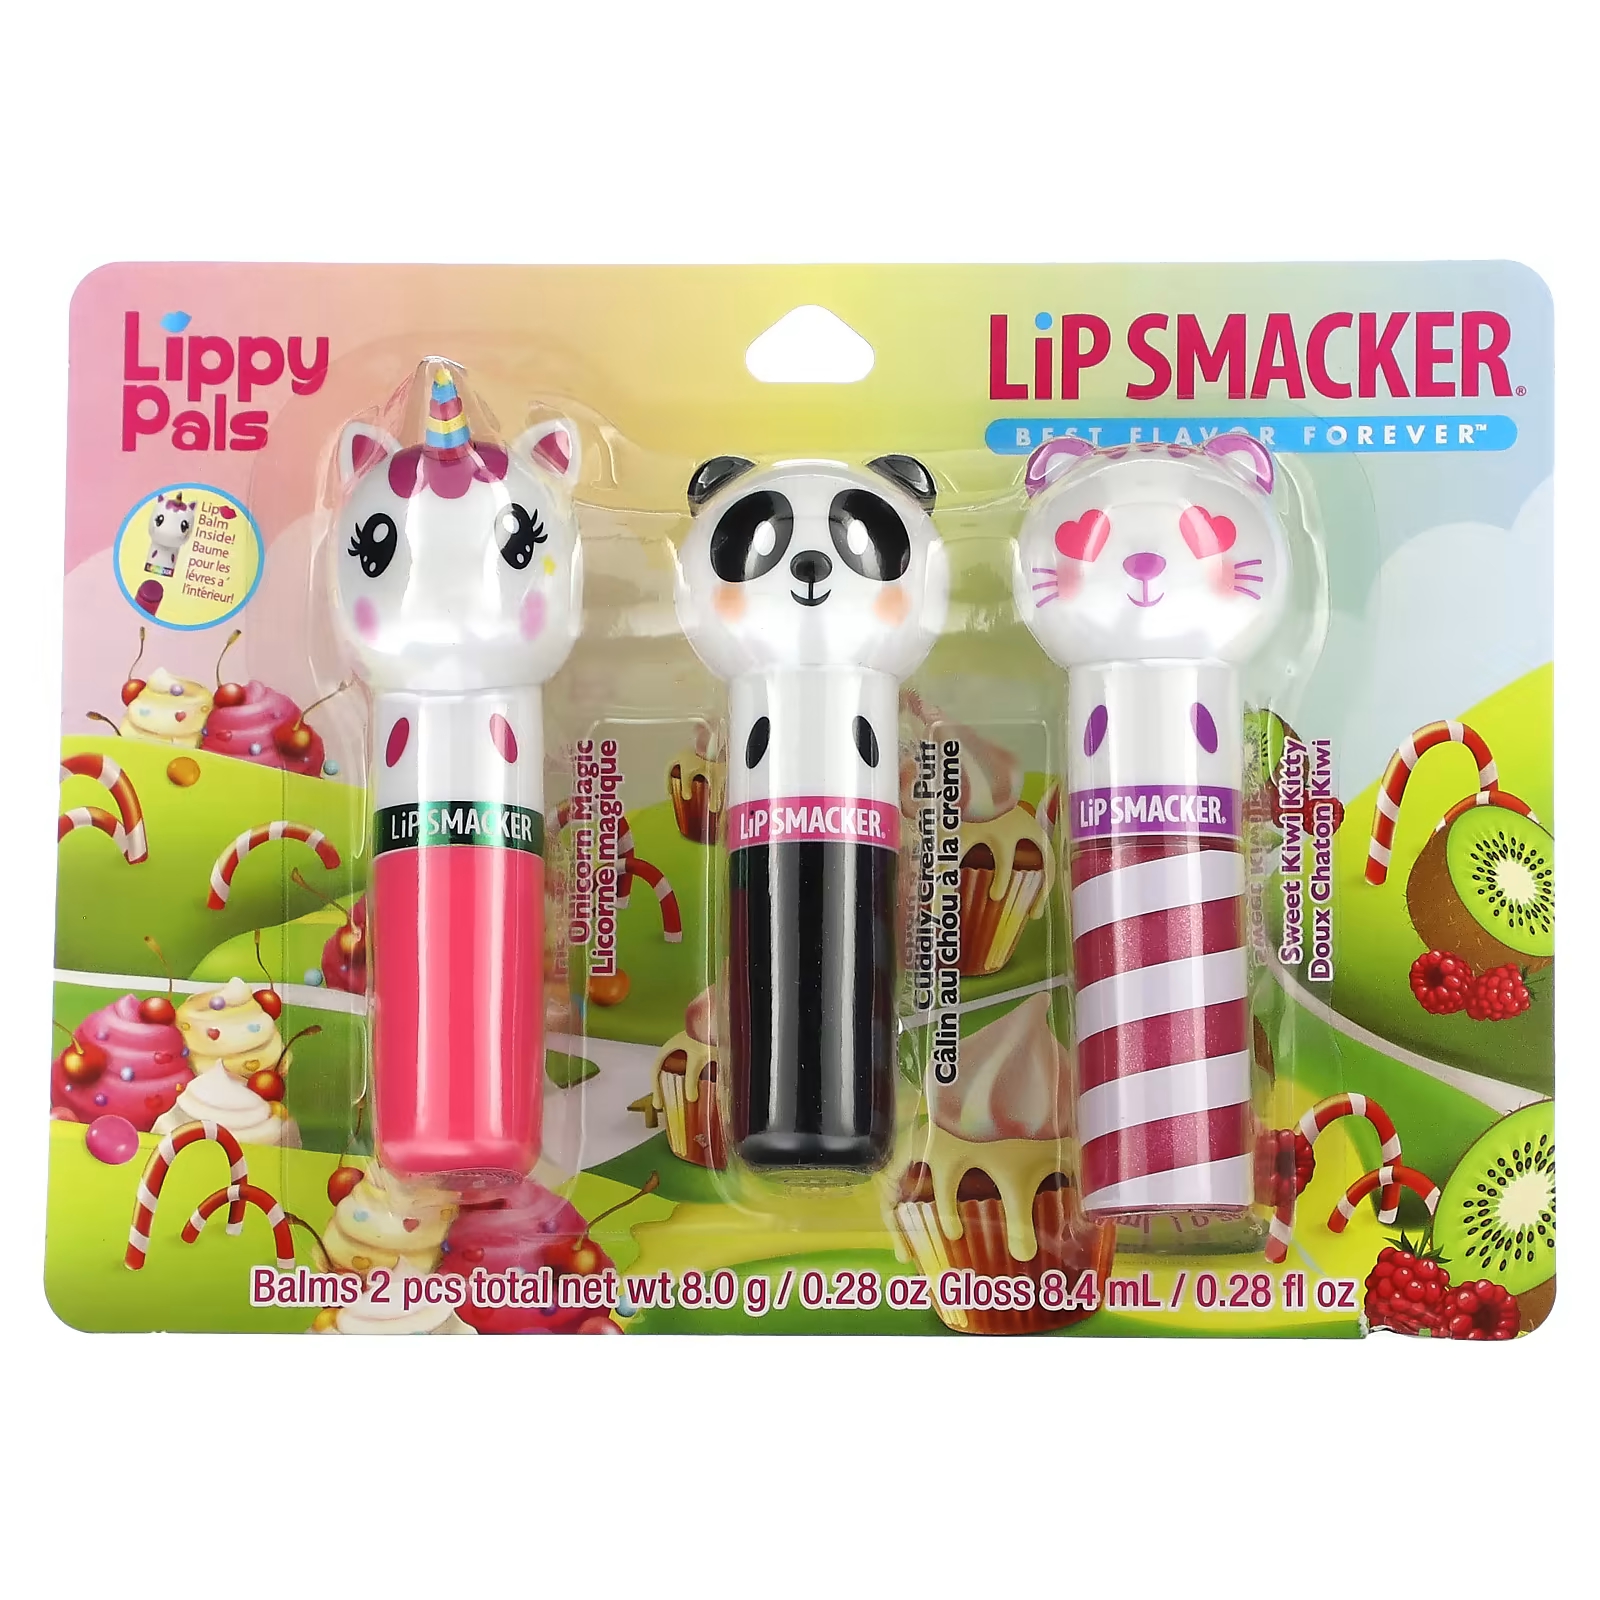 Бальзам для губ Lip Smacker Lippy Pals, 3 шт 16.4 г цена и фото